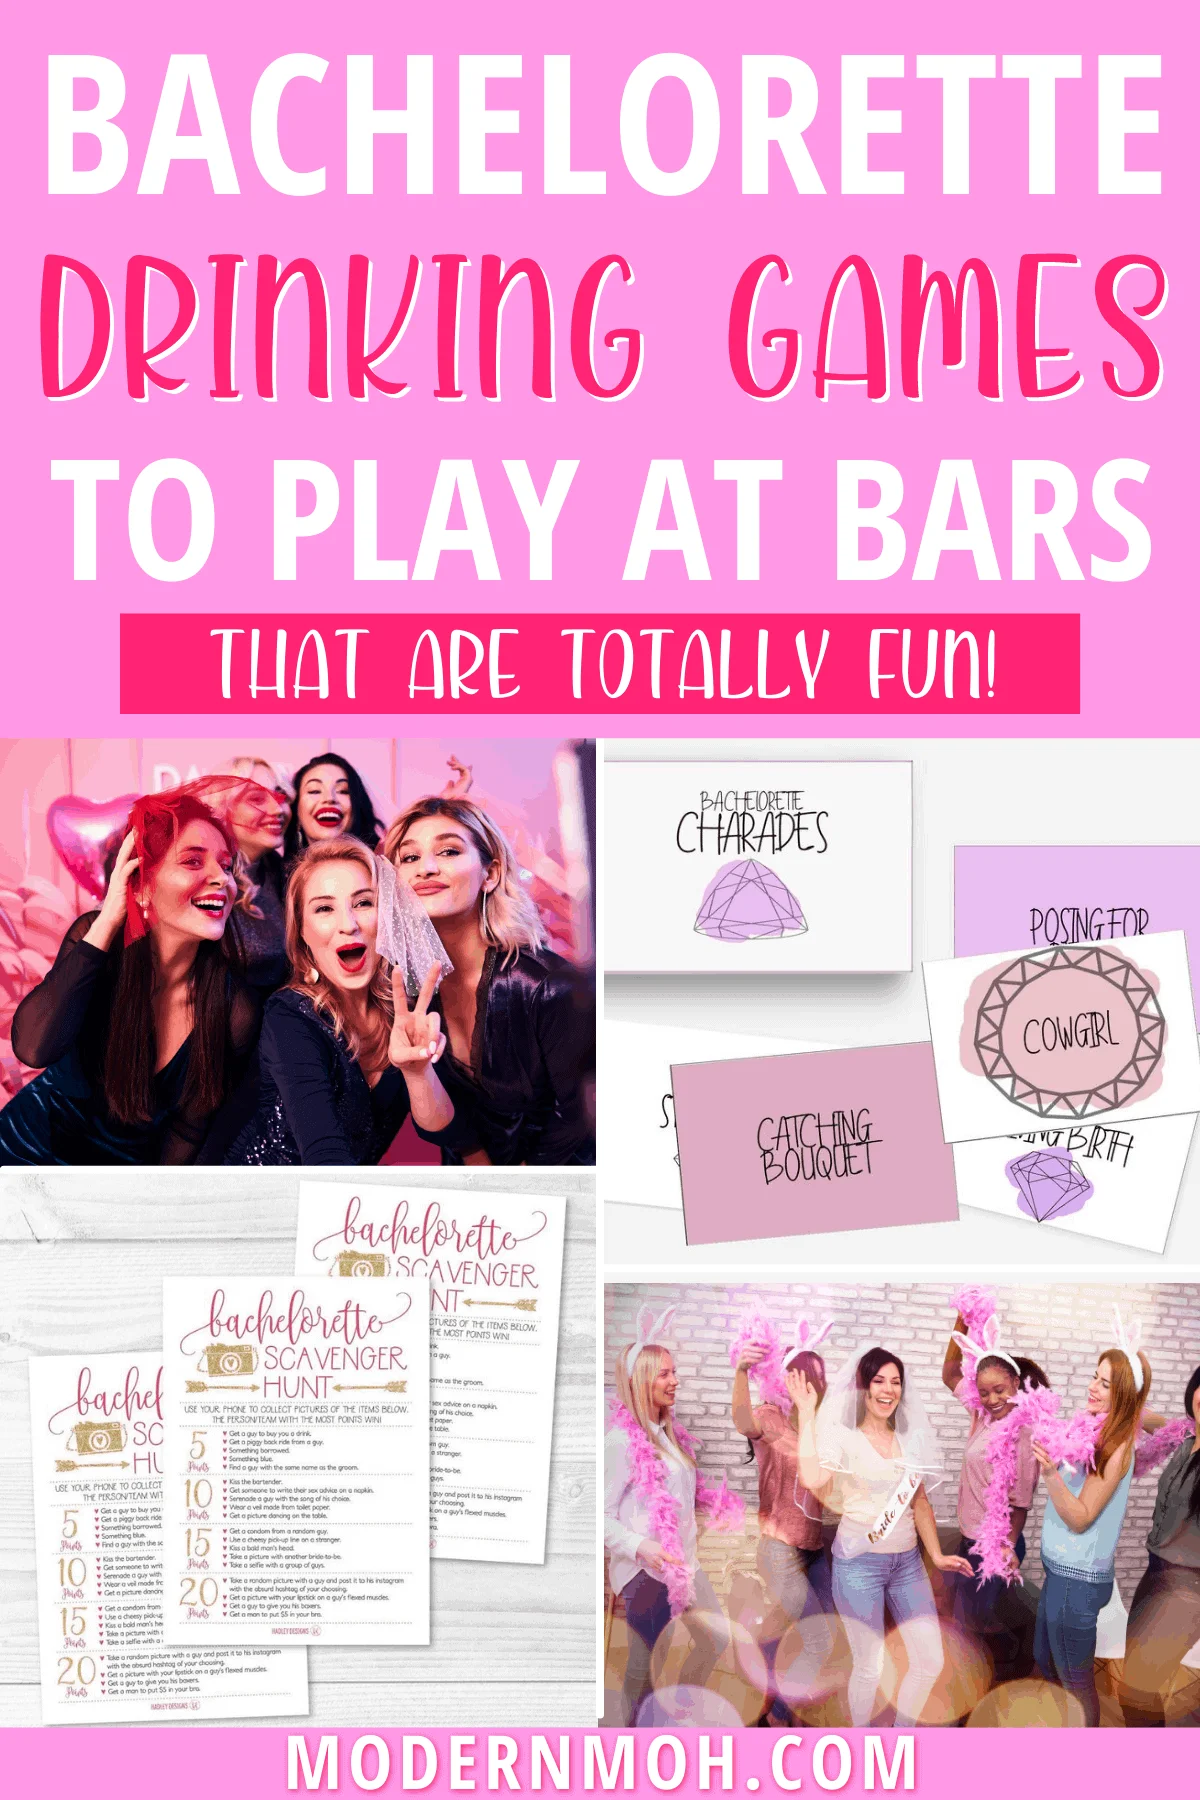 5 Hilarious Bachelorette Party Bar Games